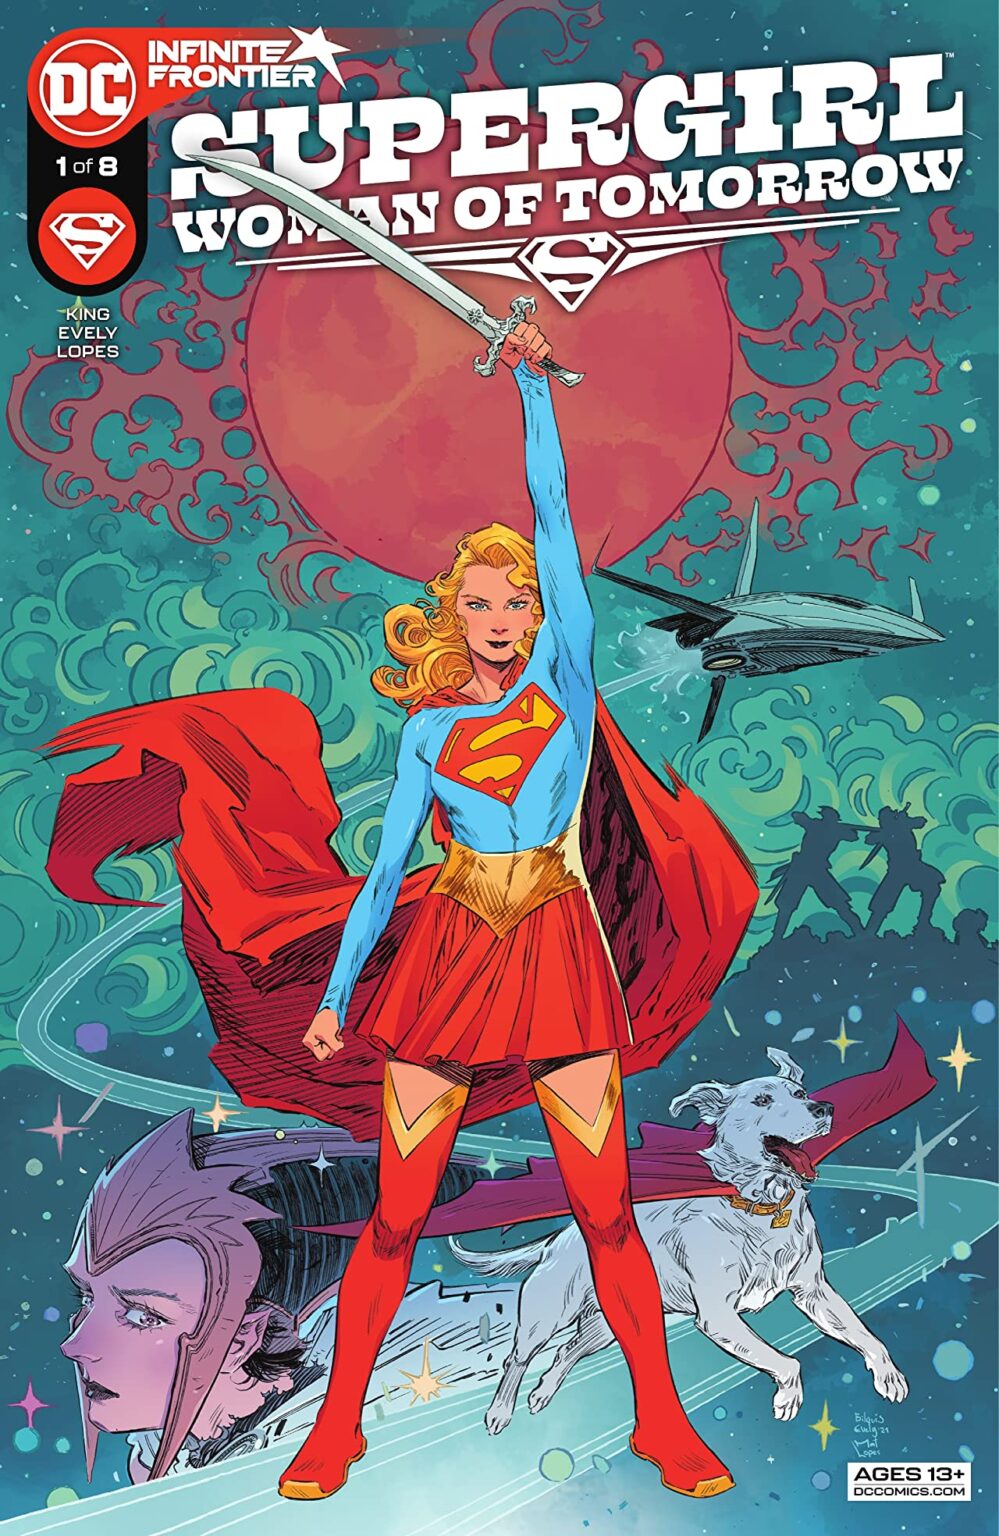 43 - Les comics que vous lisez en ce moment - Page 19 Supergirl-999x1536